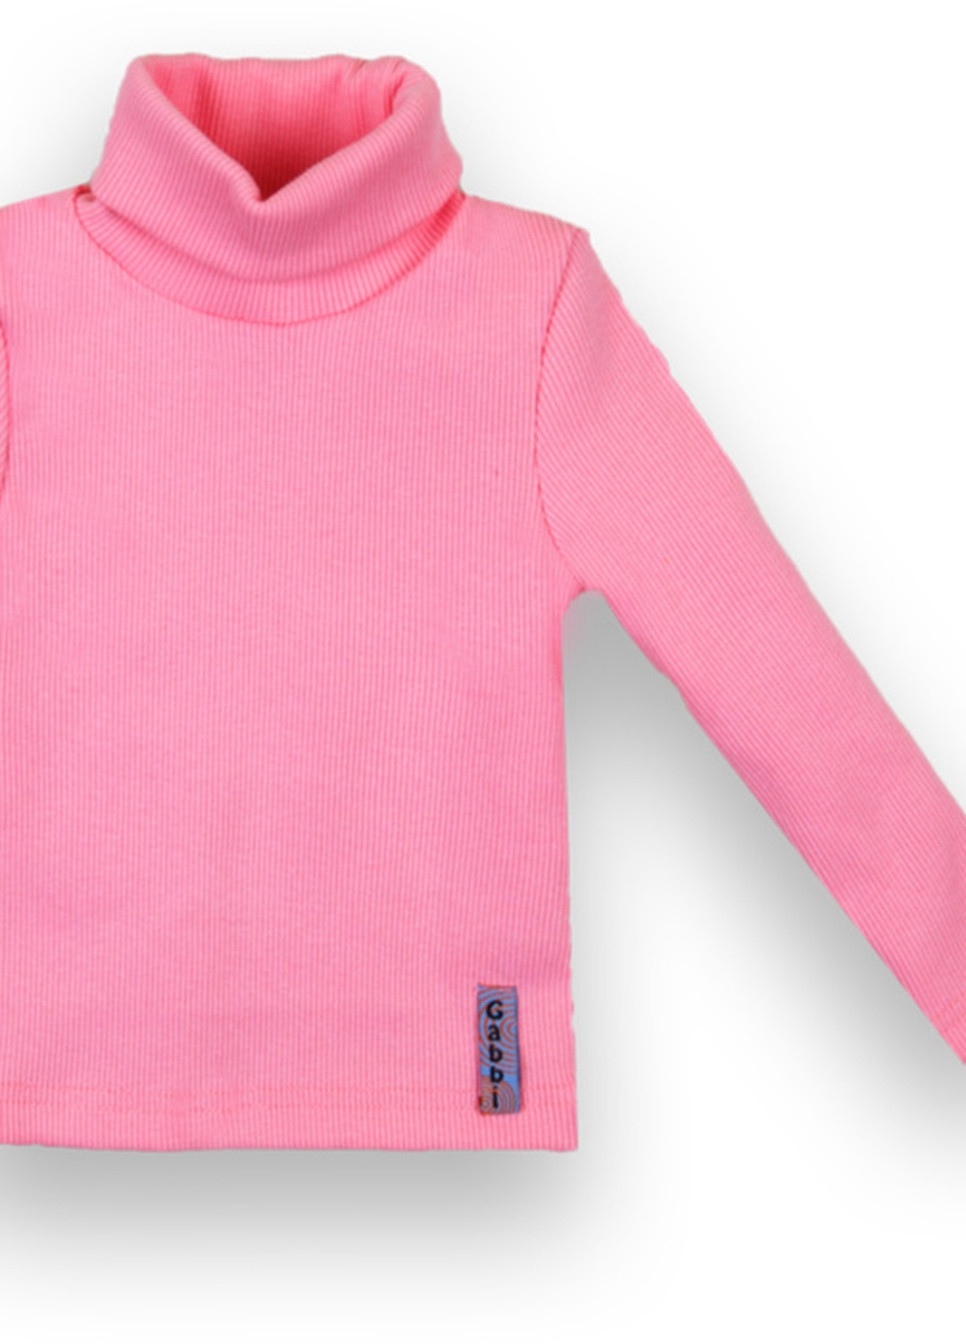 Малиновий демісезонний дитячий светр sv-21-10-2 стиль Габби